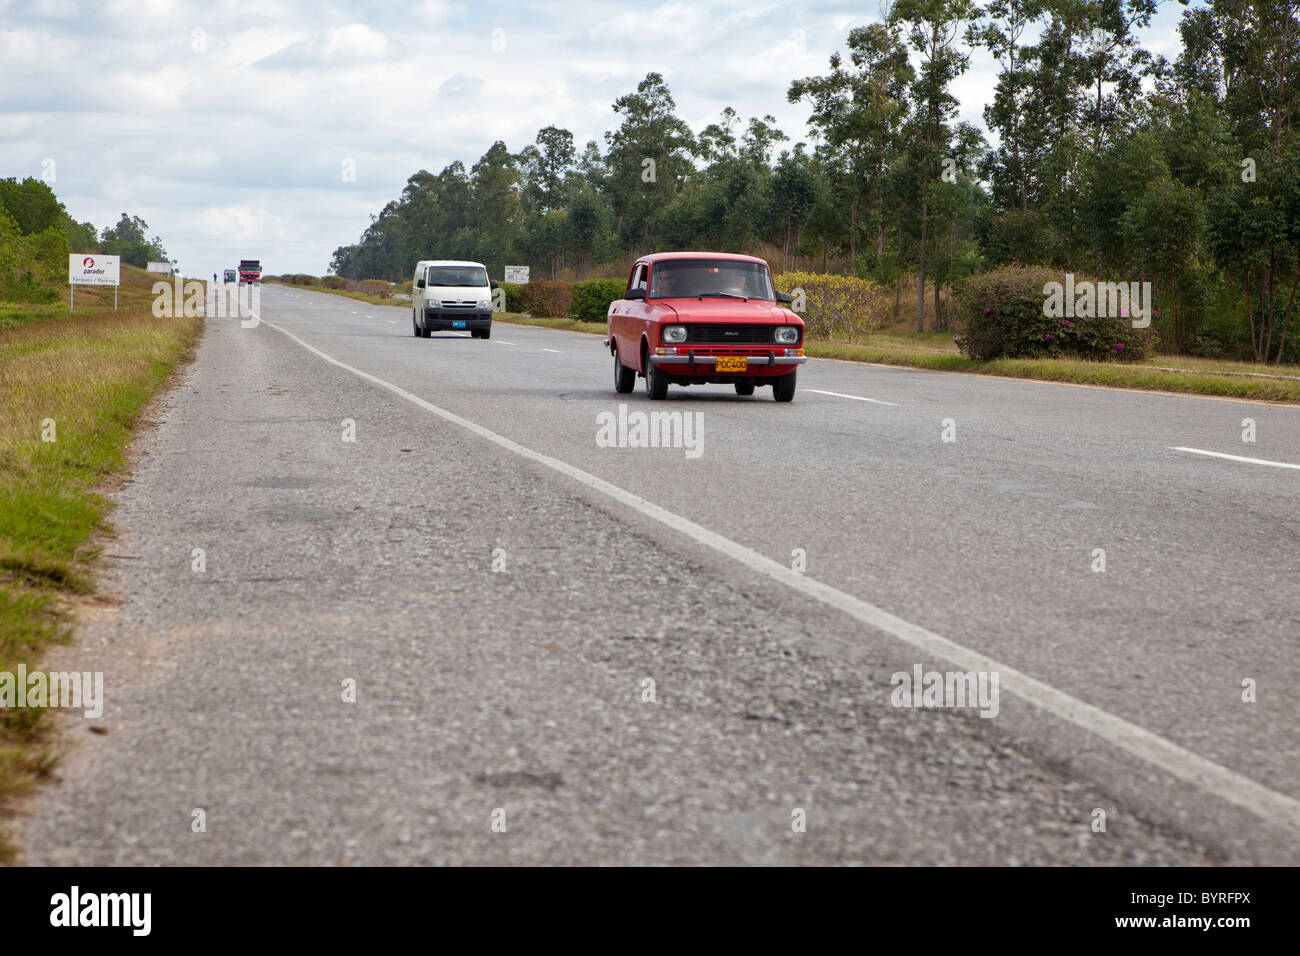 Cuba, Pinar del Rio Region, Viñales (Vinales) Area. Highway A4 Motor Traffic. Stock Photo